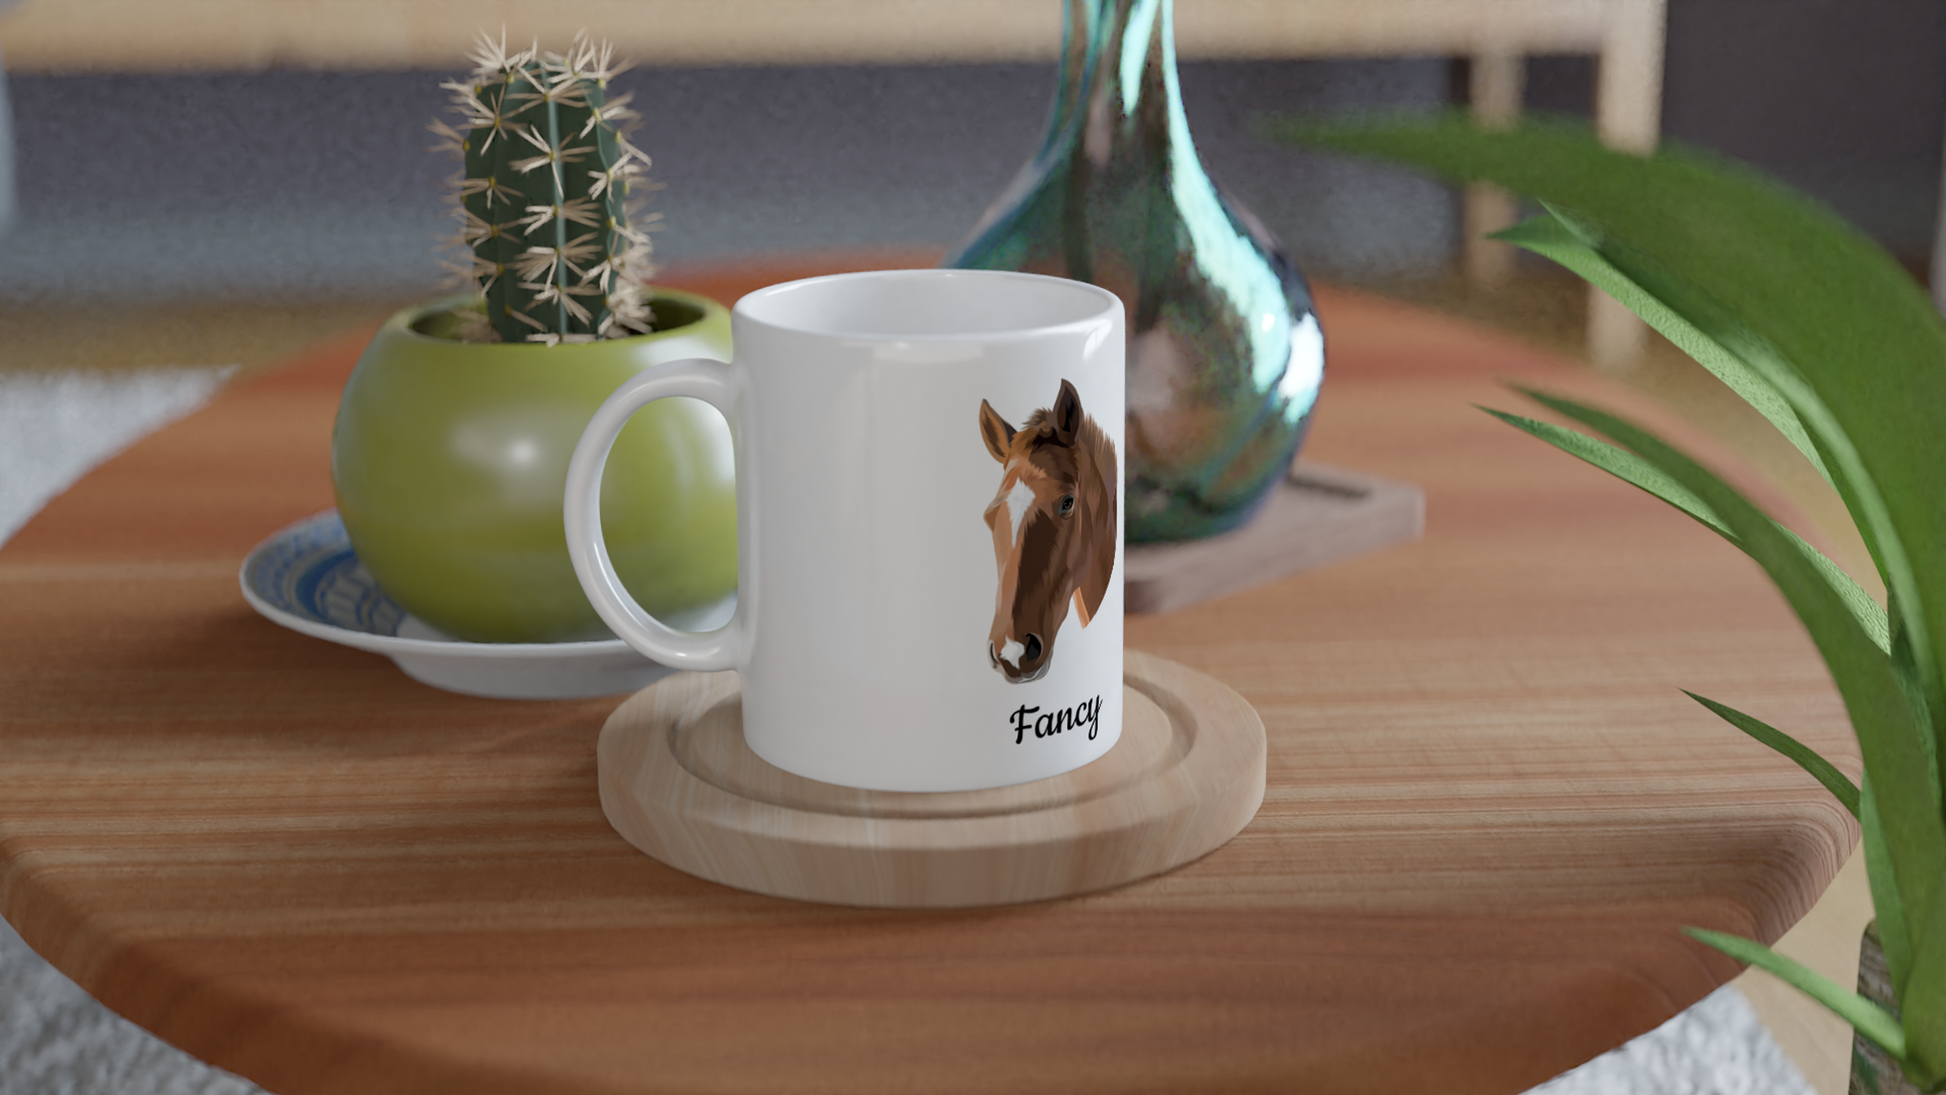 Hand Drawn Horse || 11oz Ceramic Mug - TruPaint - Personalized; Hand drawn & personalized with your horse